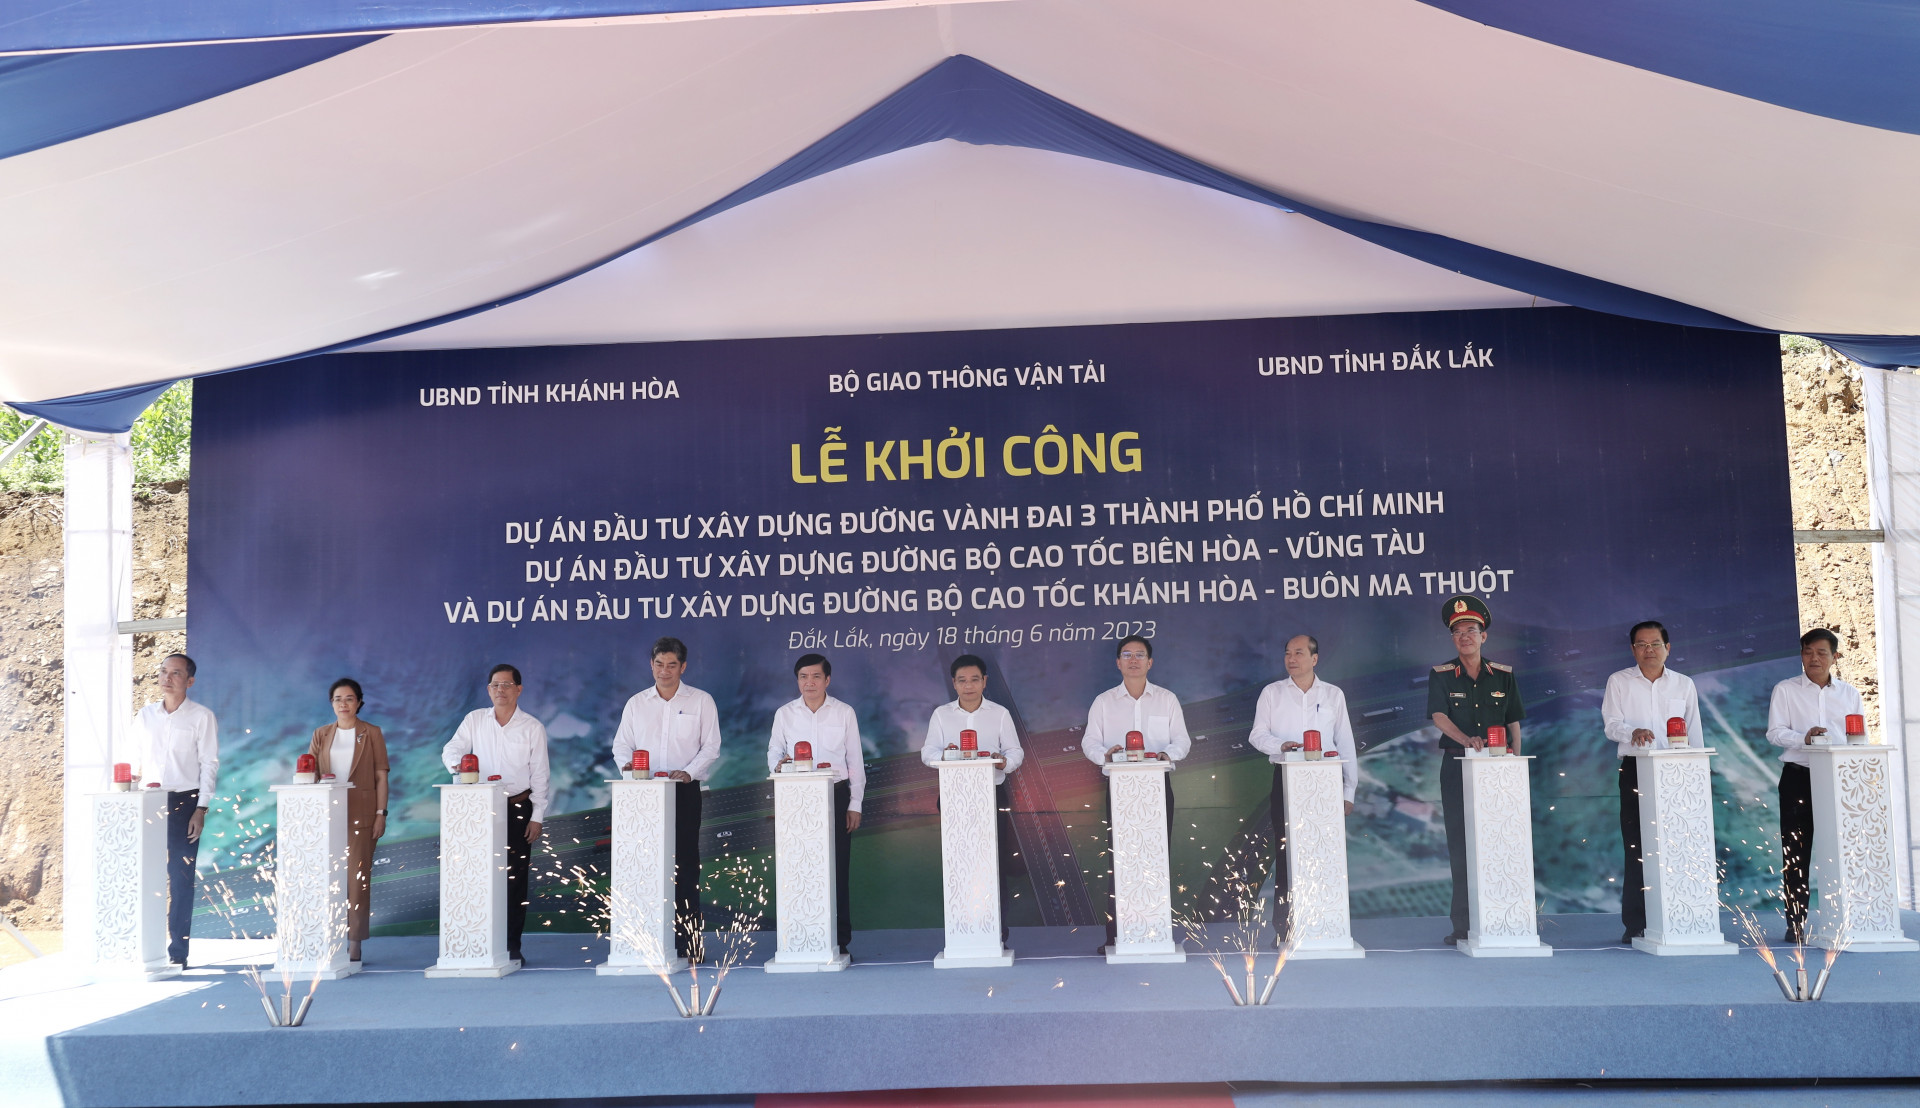 Các đại biểu tại điểm cầu tỉnh Đắk Lắk thực hiện nghi thức bấm nút khởi công dự án cao tốc Khánh Hòa - Buôn Ma Thuột.